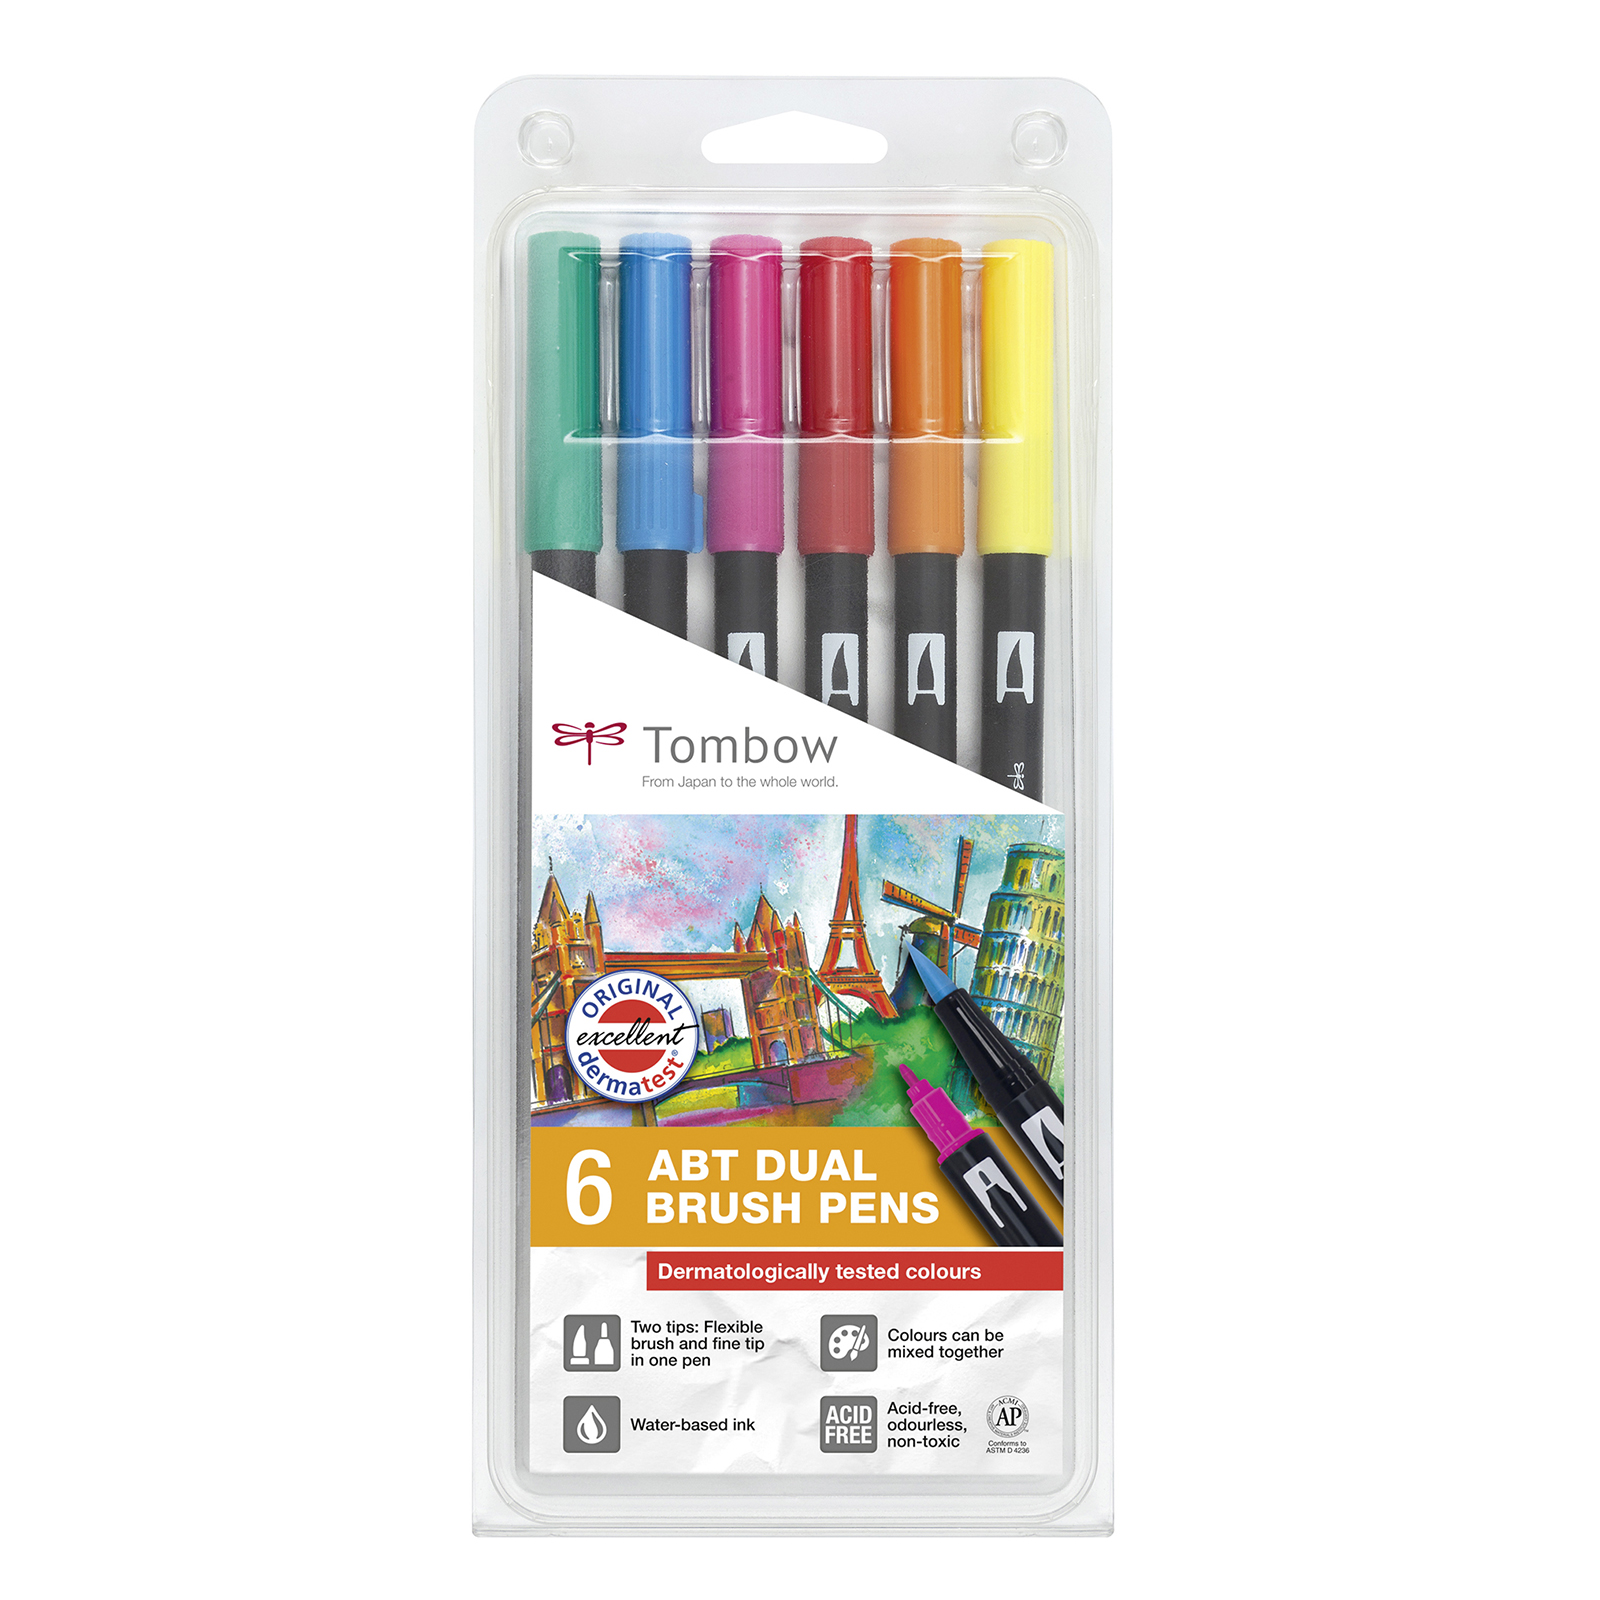 Tombow • Brush pen con doble punta set de 6 colores probados dermatológicamente